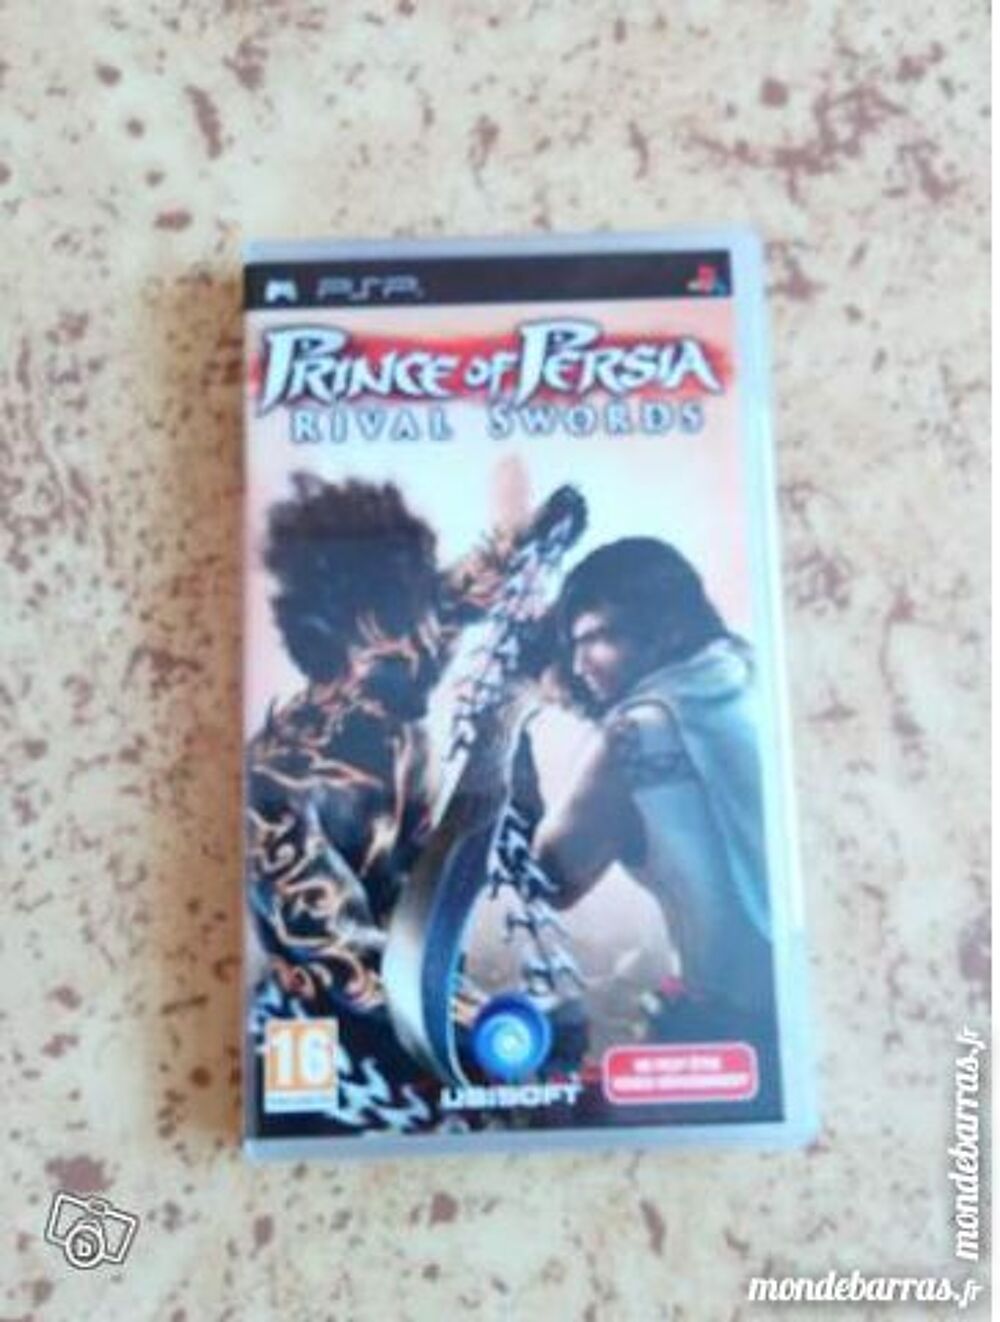 Jeu PSP: Prince Of Persia Rival Swords Consoles et jeux vidos